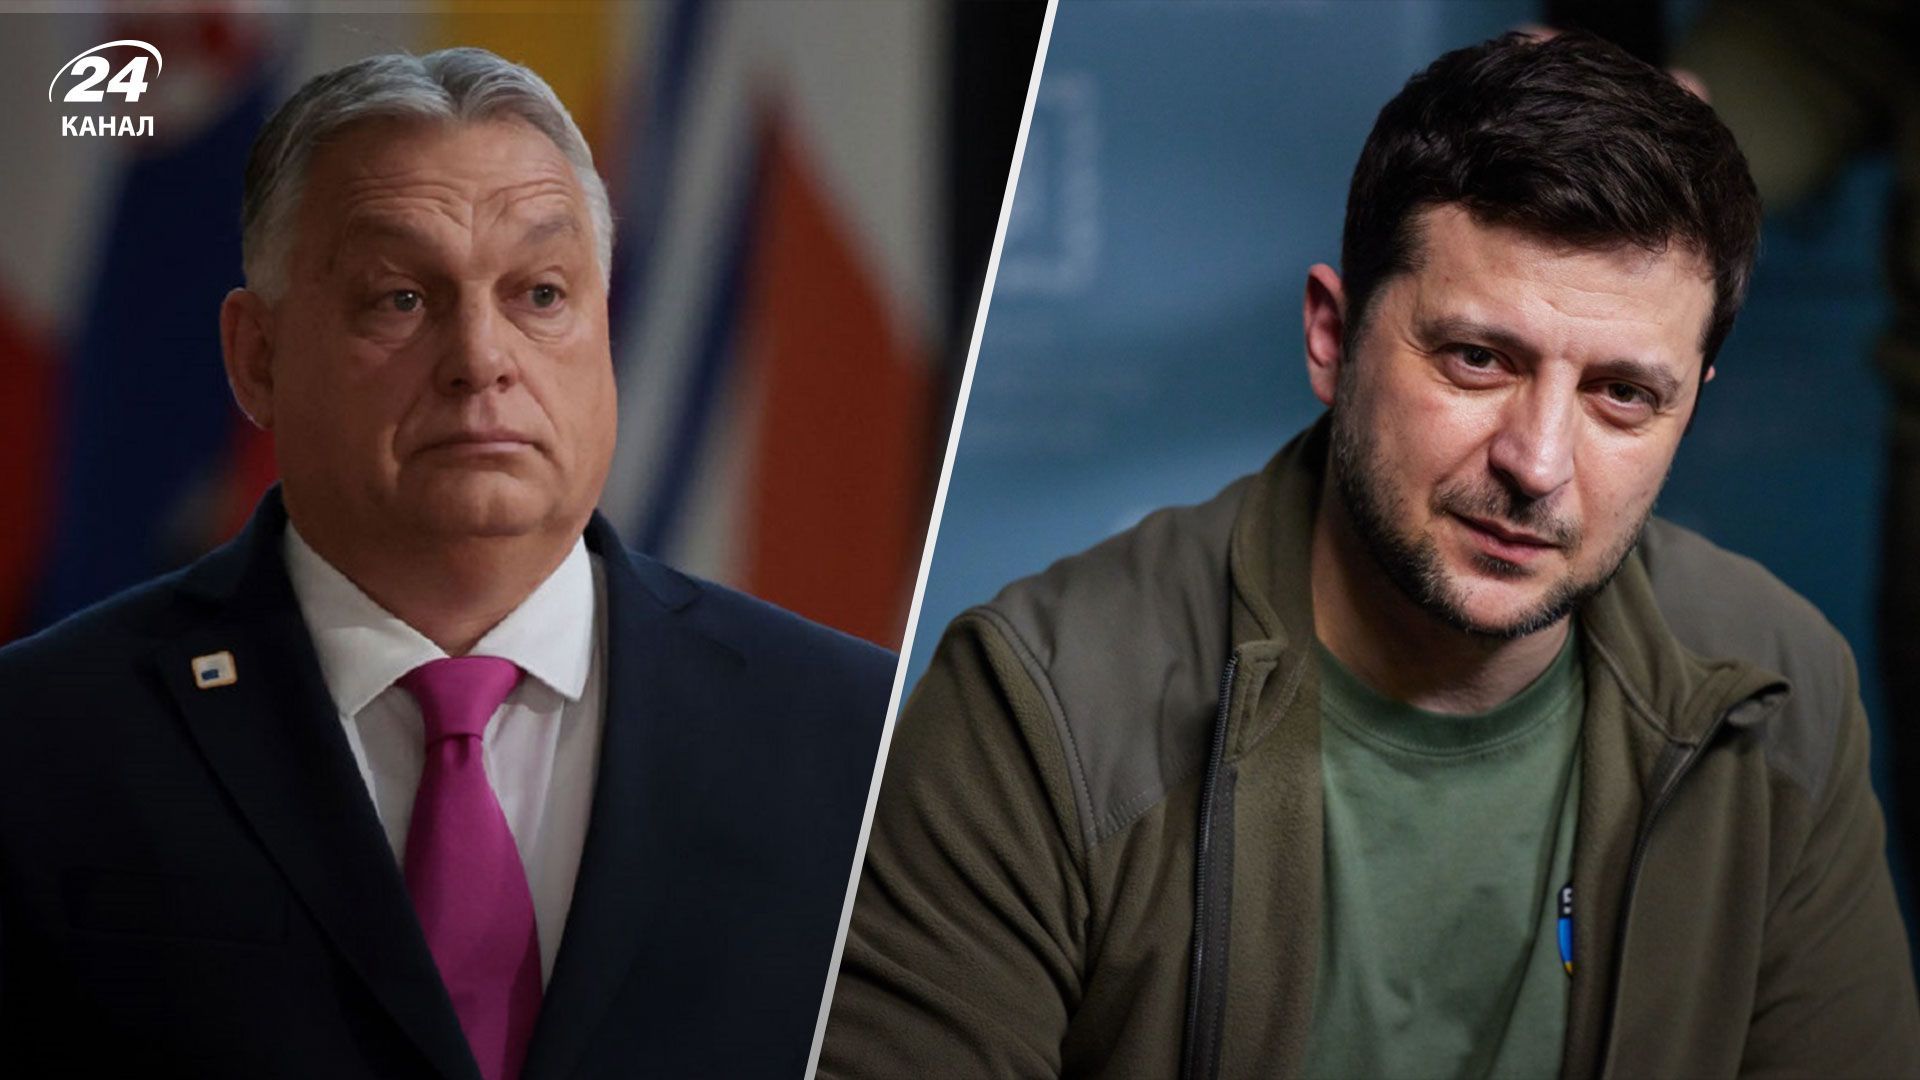 Віктор Орбан прийняв пропозицію Володимира Зеленського зустрітися